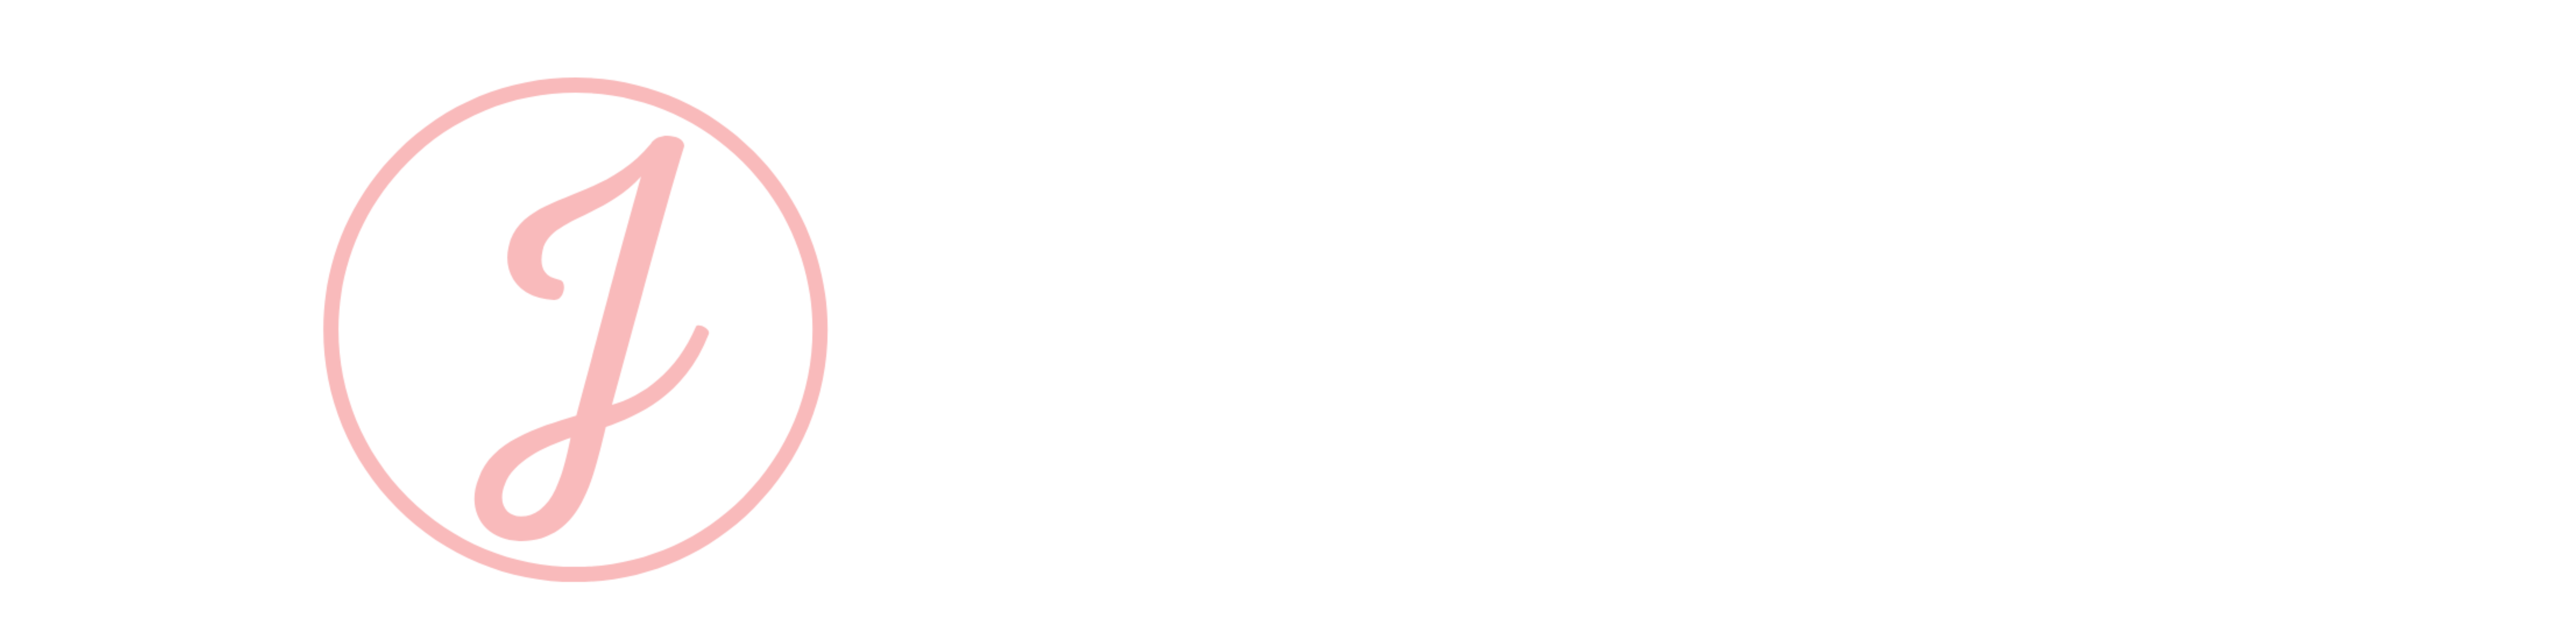 jen advantage logo